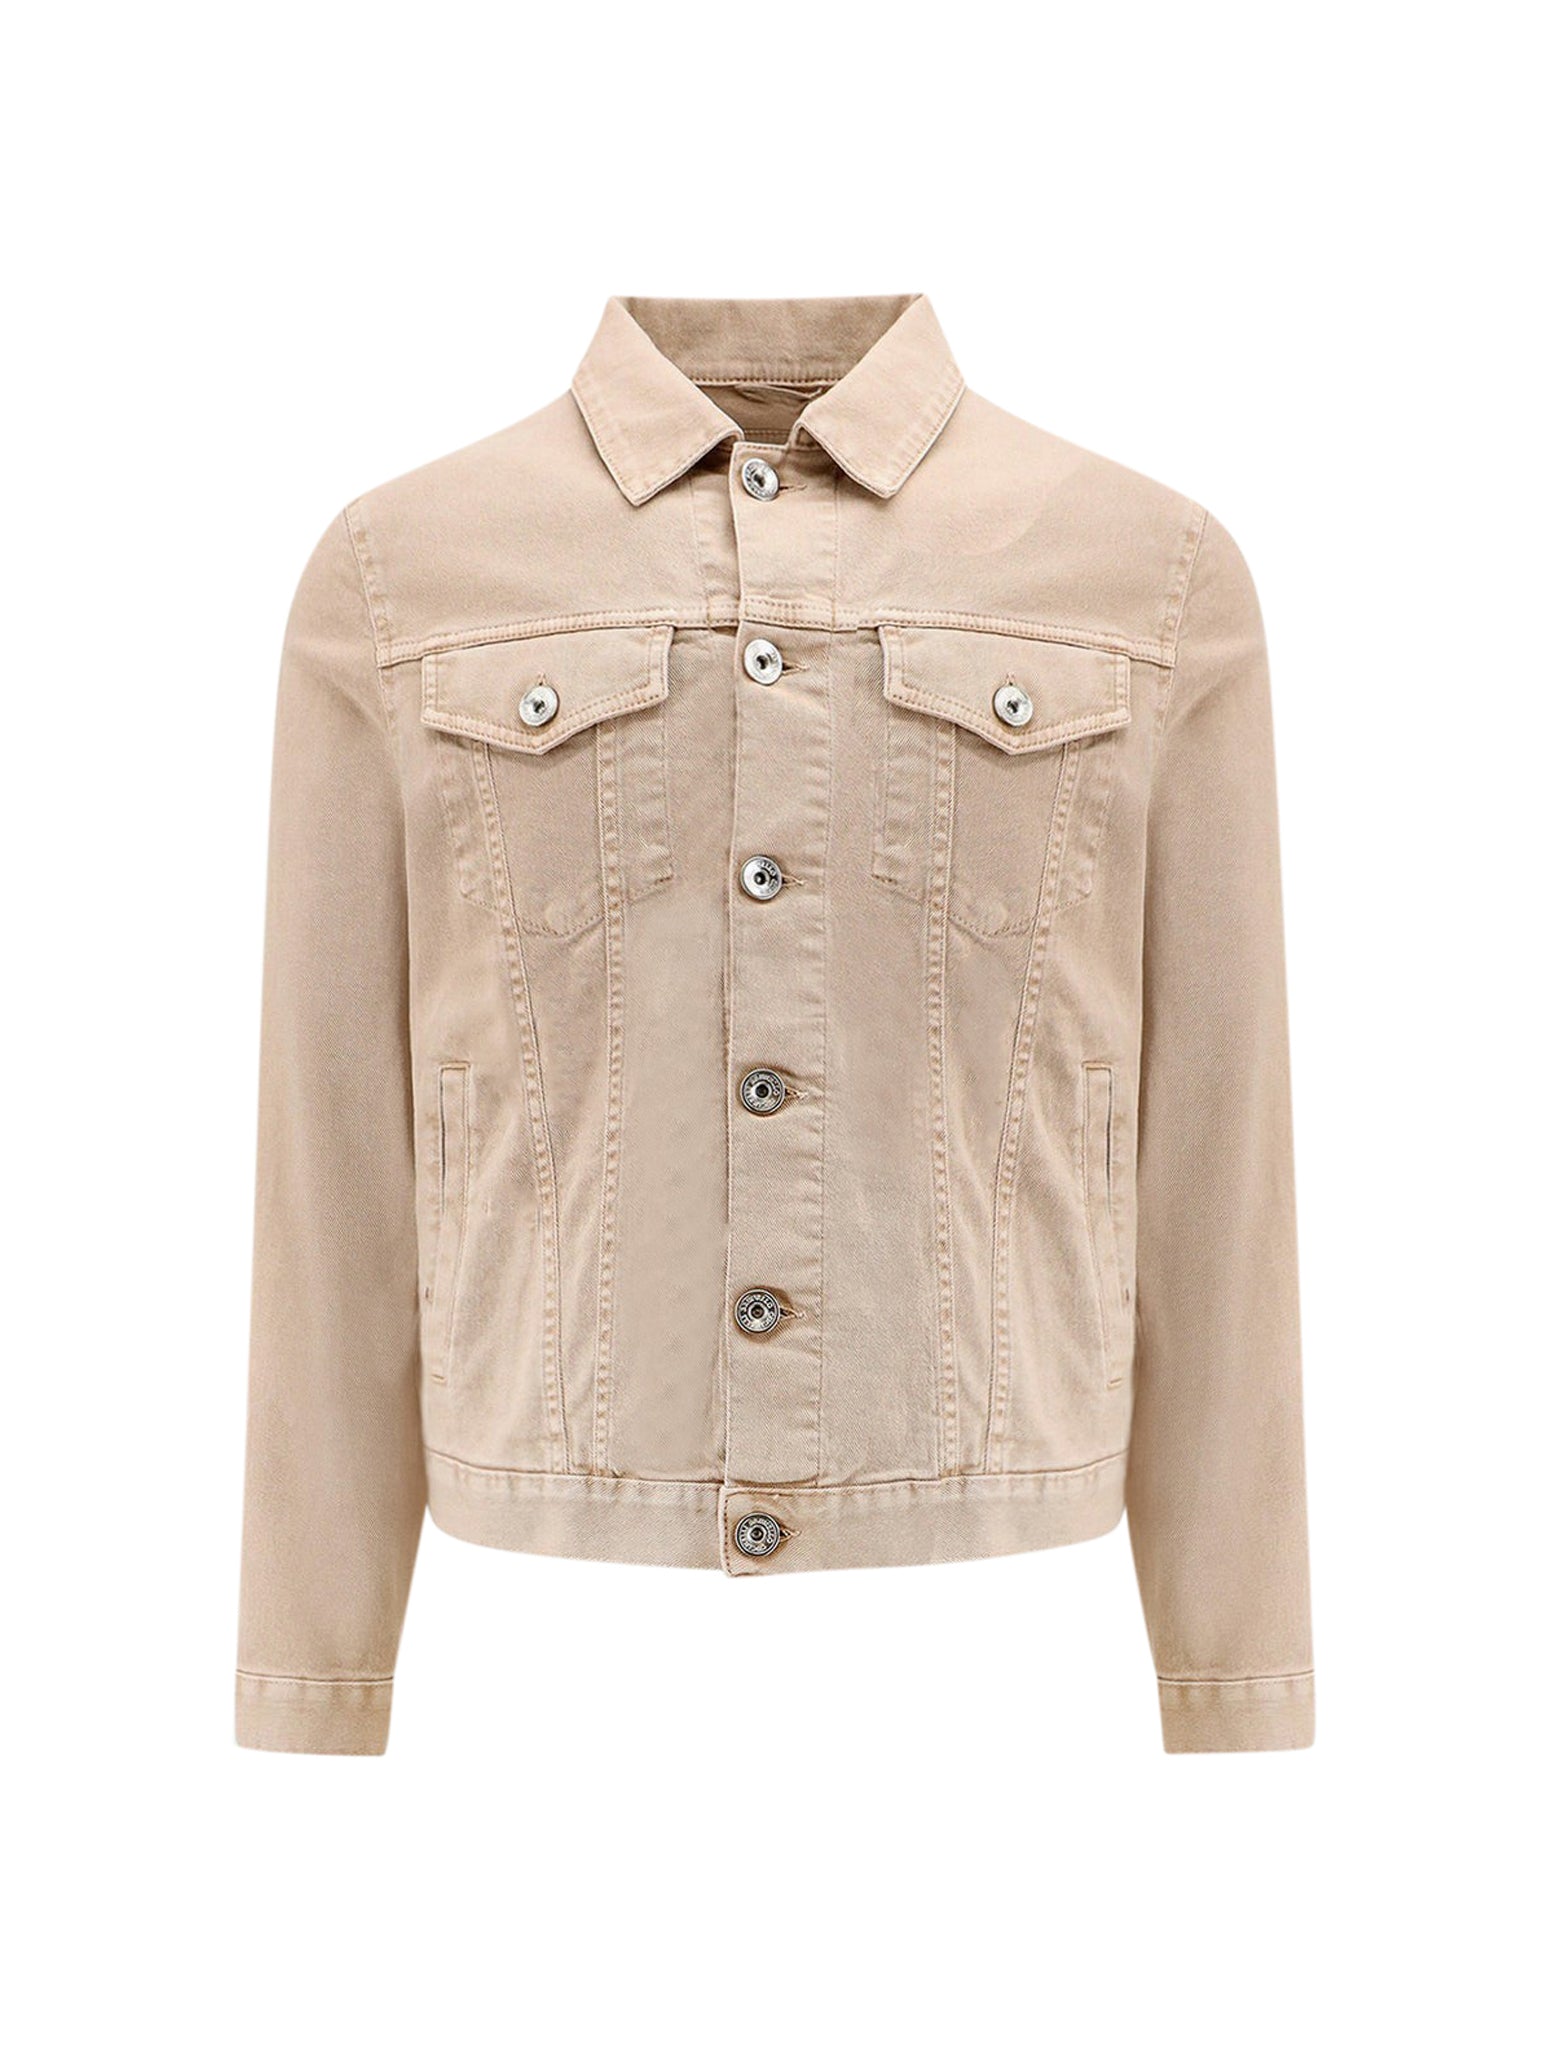 Four-pocket jacket in light, garment-dyed comfort cotton denim